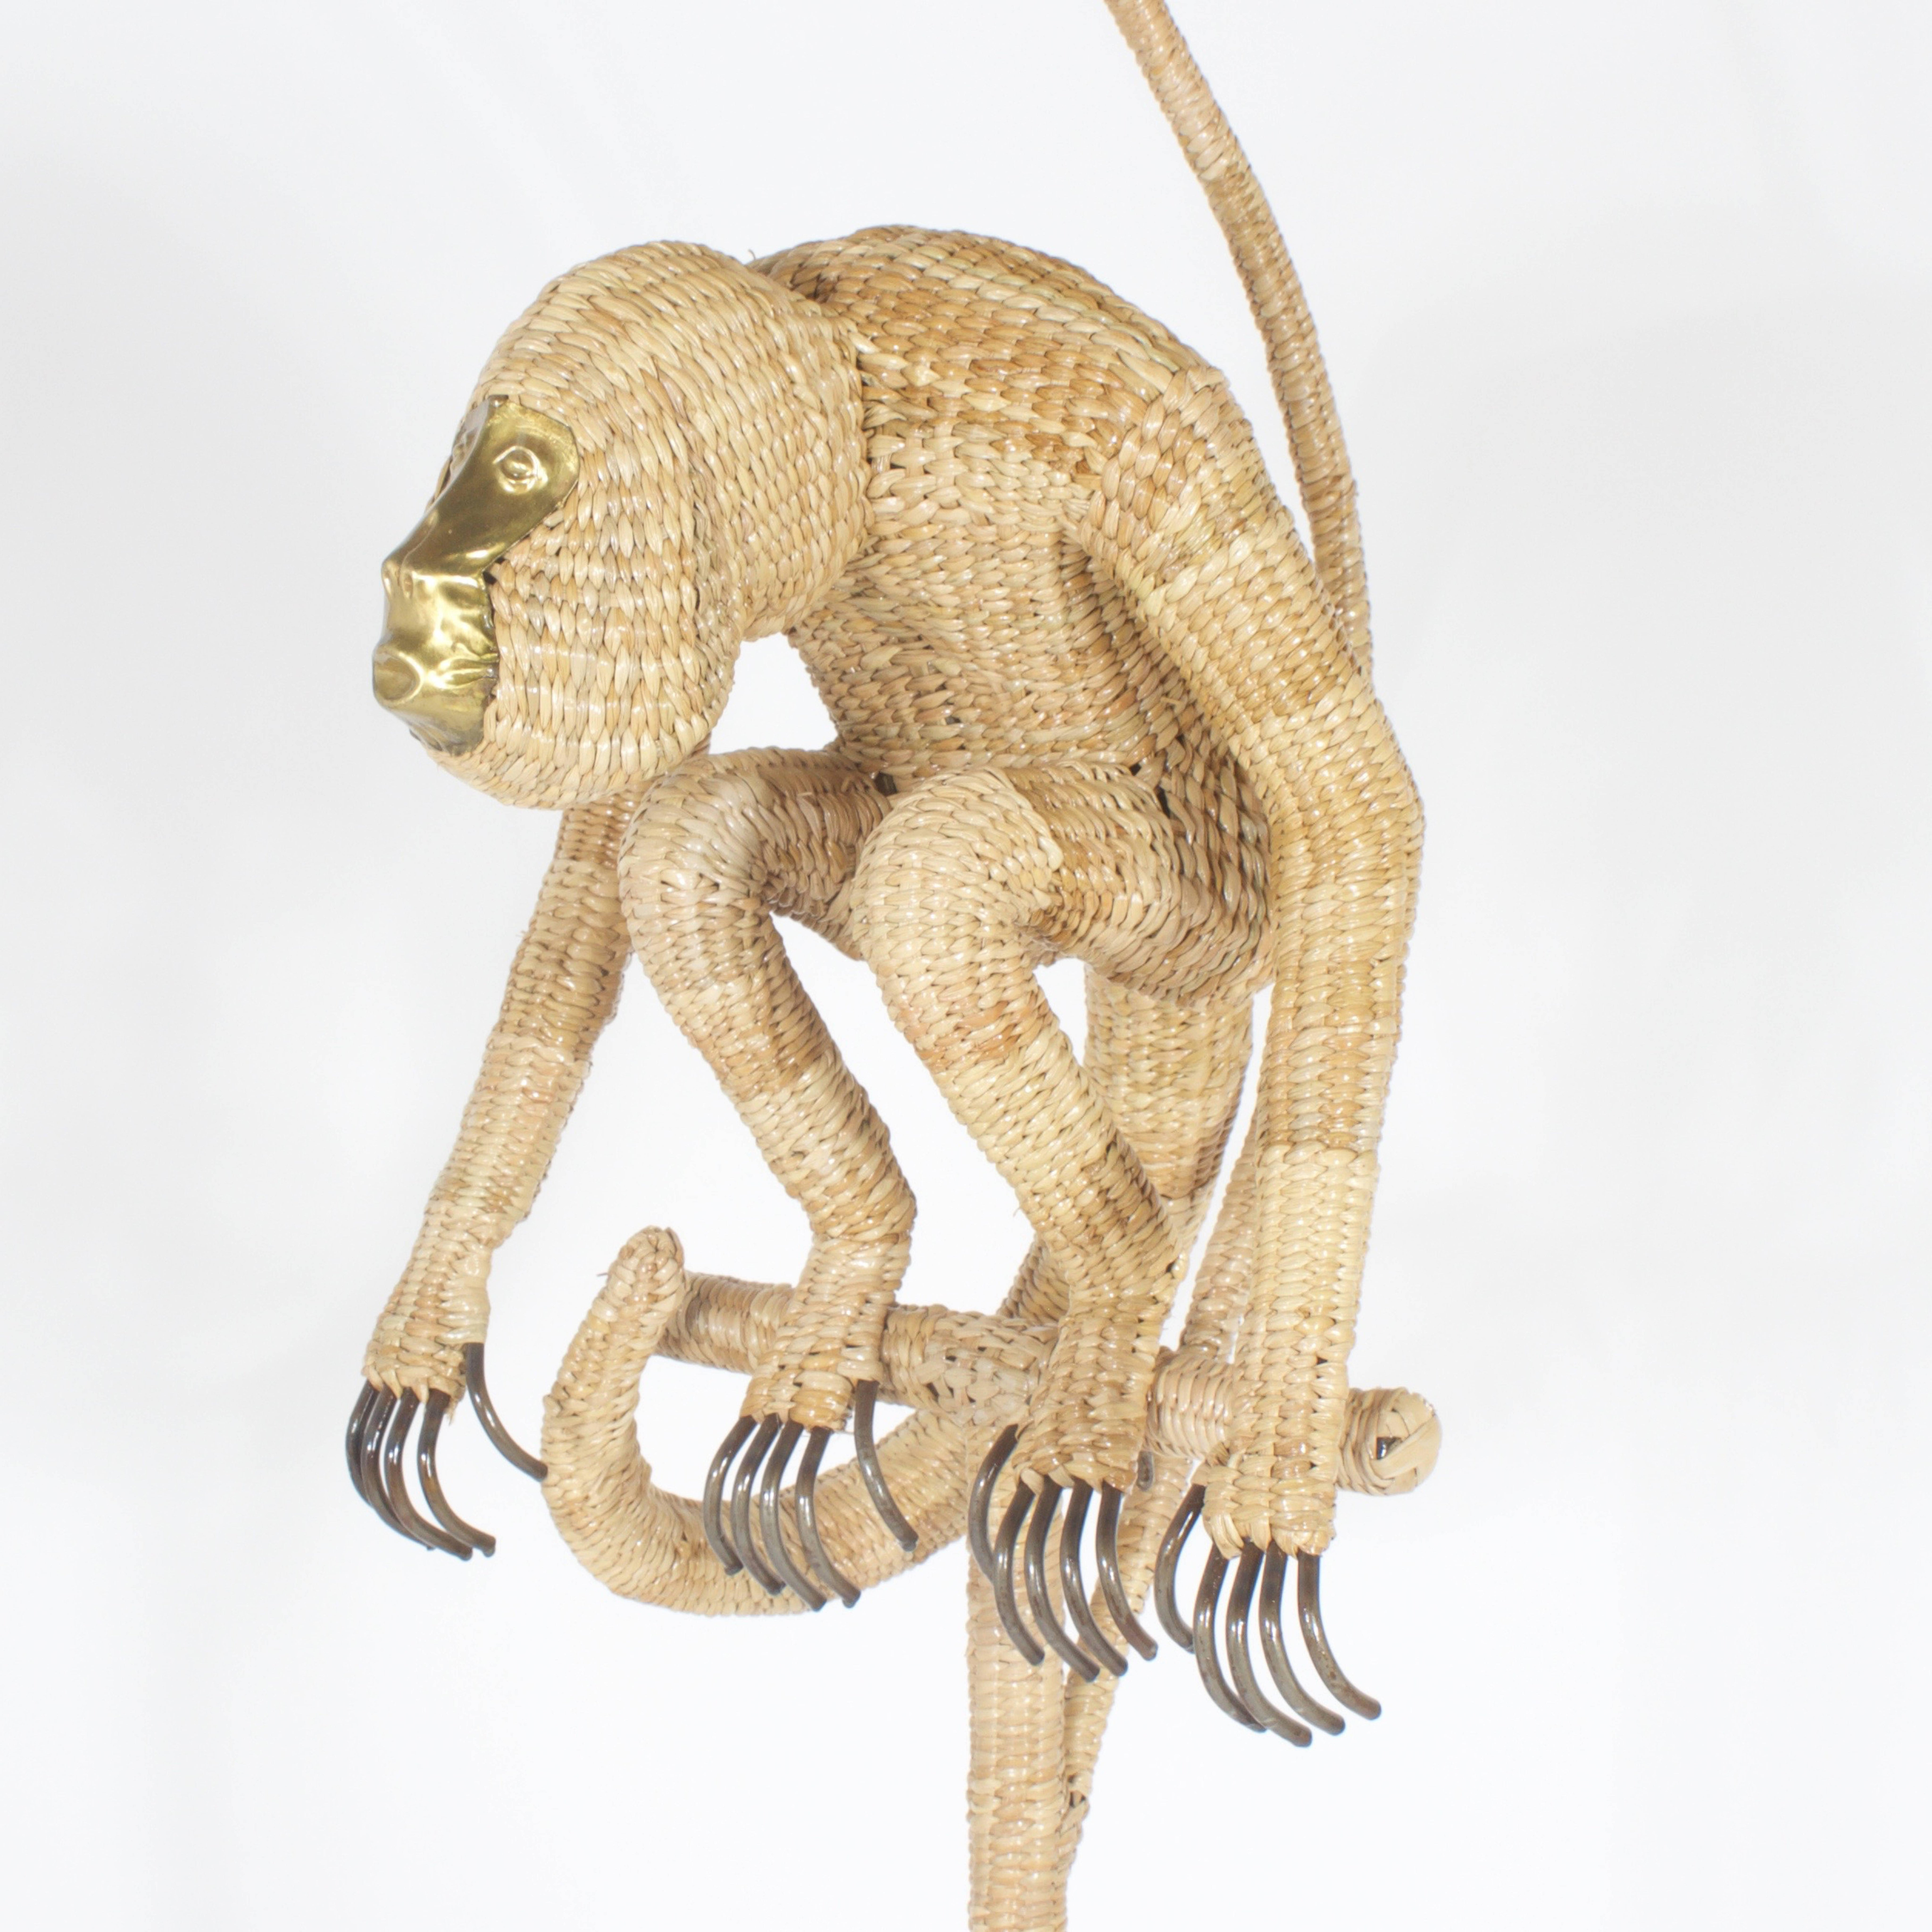 Le lampadaire Mario Torres est constitué d'une structure métallique enveloppée d'osier ou de roseau dans un motif tissé serré sur une couleur neutre organique. Avec un abat-jour en osier assorti et un singe à longue queue prêt à l'action, avec un